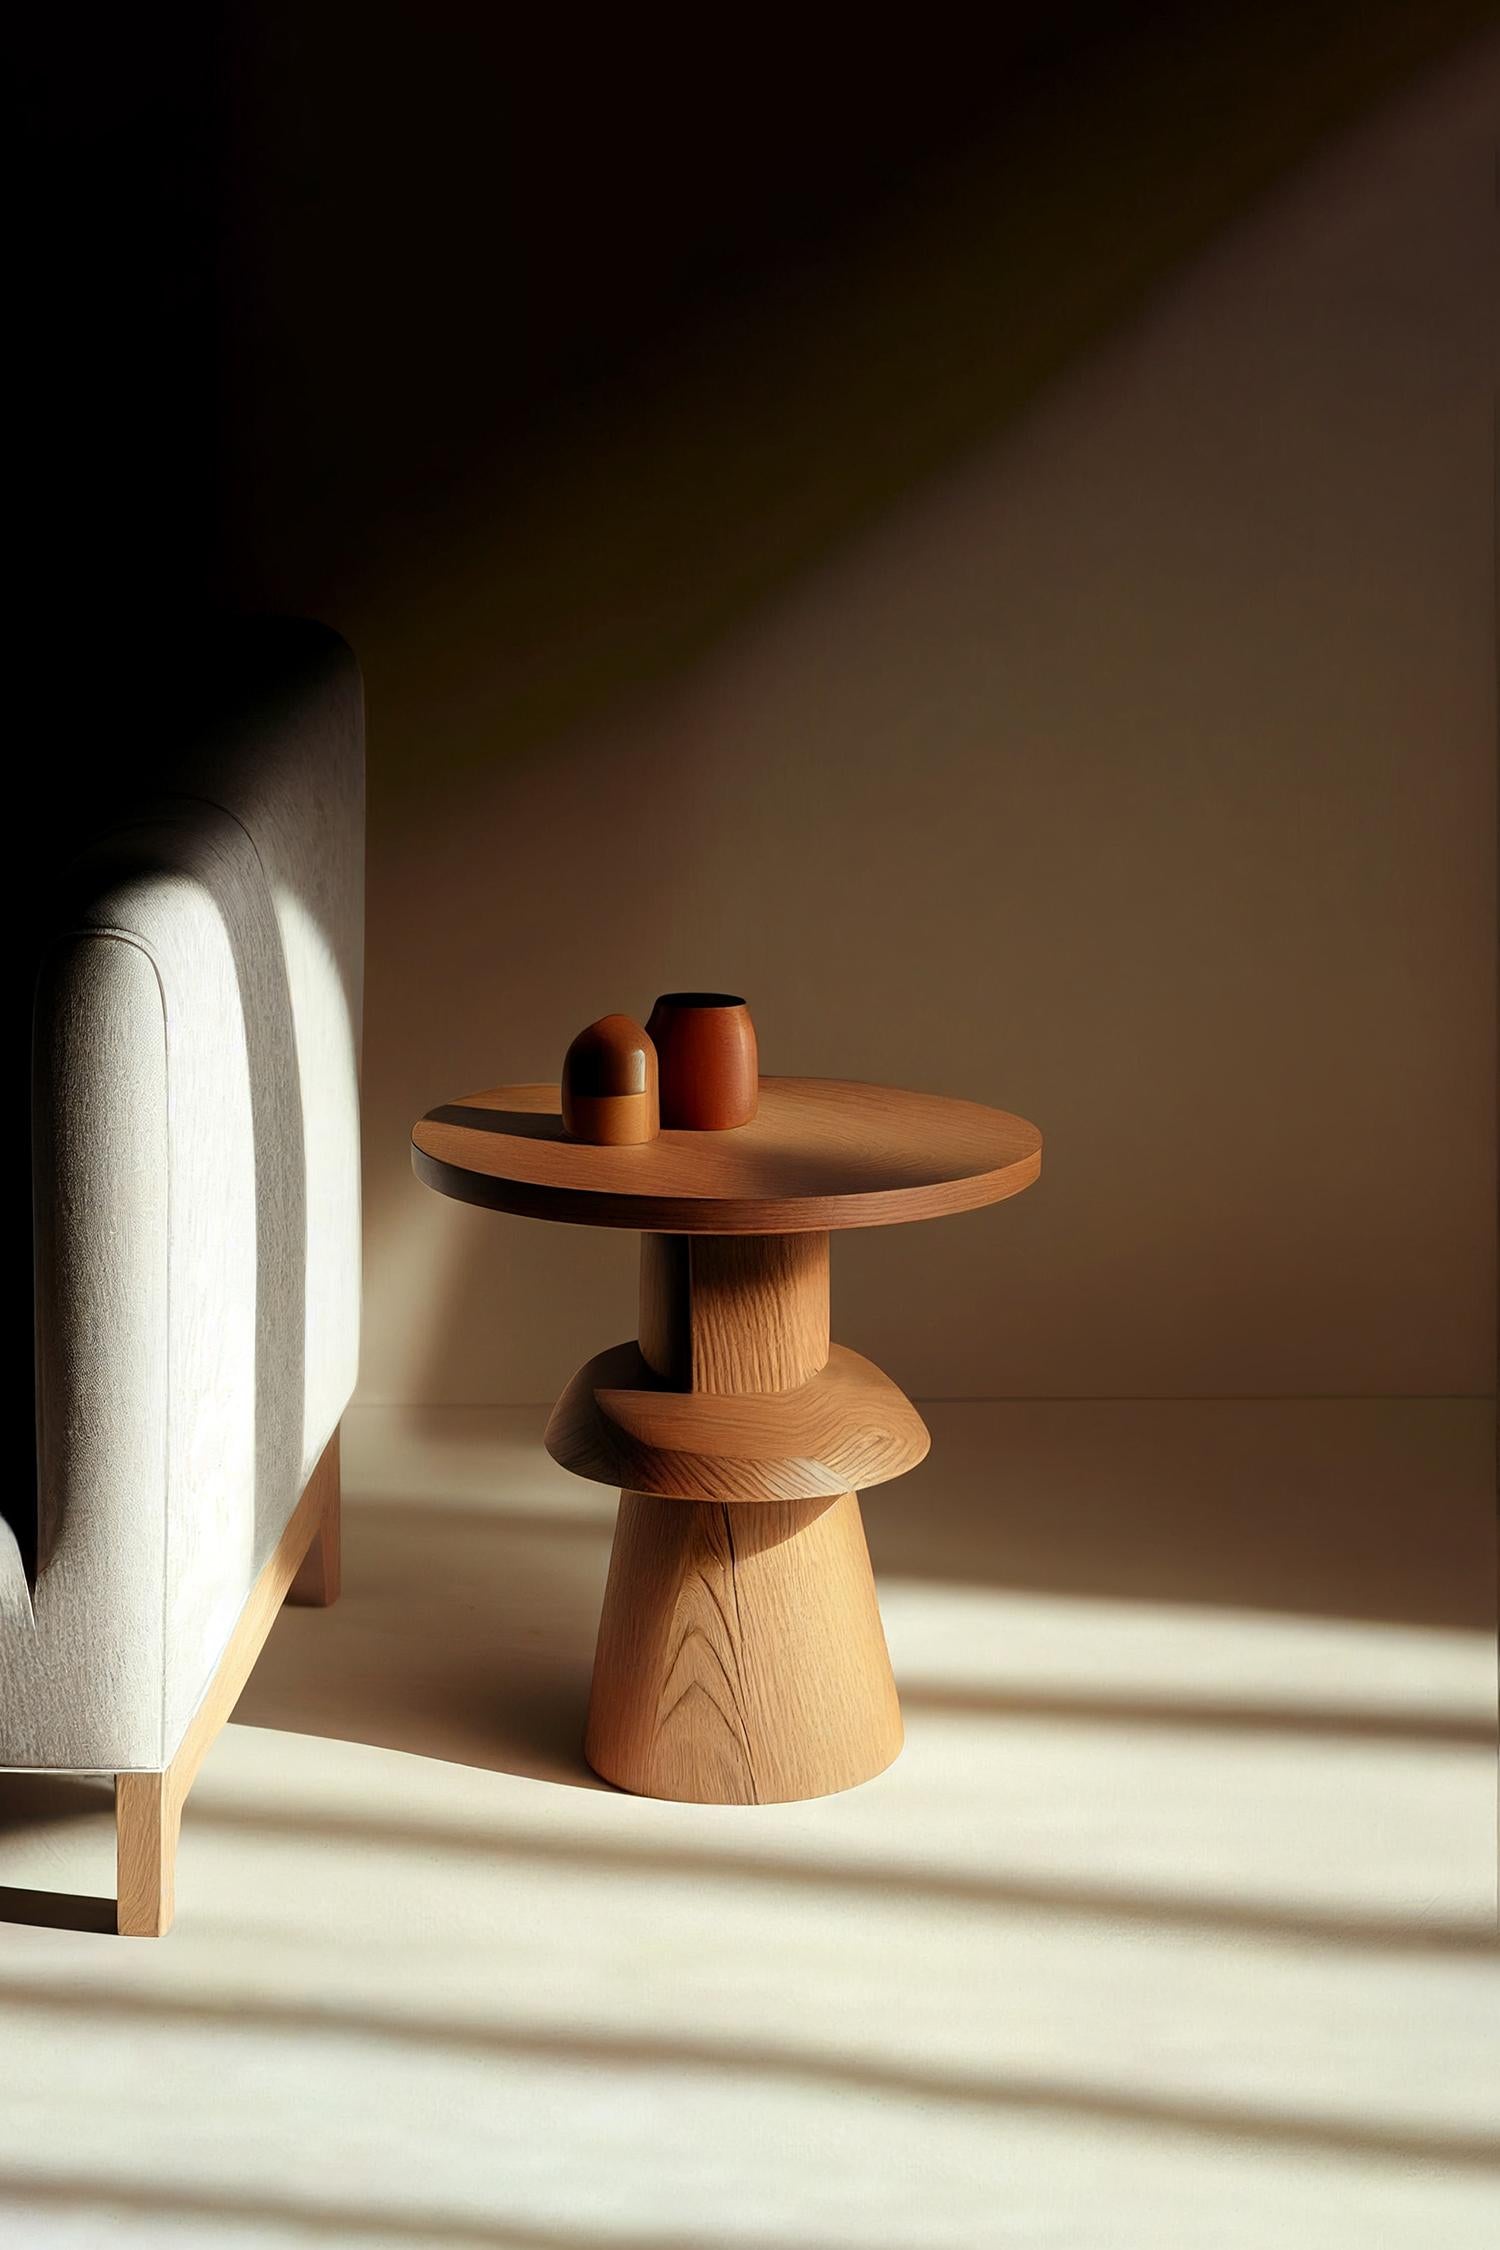 Socle 4 Beistelltisch, Beistelltisch, Nachttisch 

Socle ist ein kleiner Tisch aus Massivholz, der vom NONO Designteam entworfen wurde. Die aufwendige Konstruktion aus Massivholz dient als Stütze, ähnlich wie ein Sockel für eine Statue oder